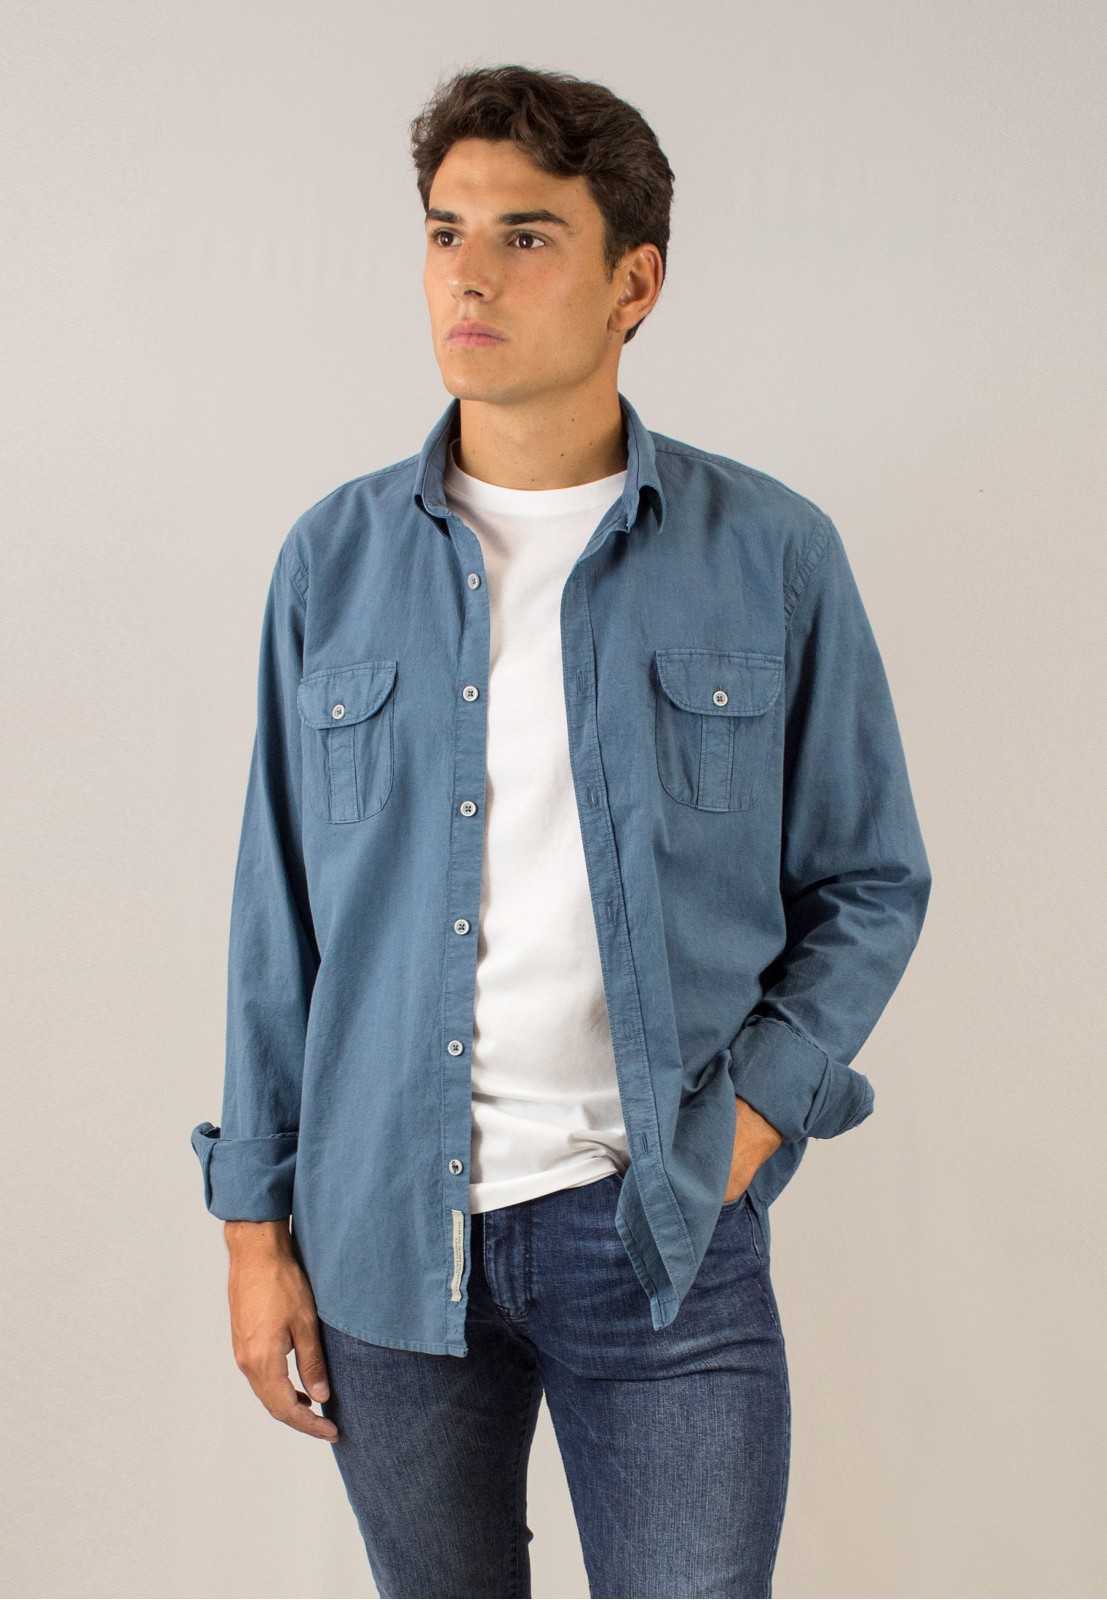 Camisa de hombre Pit azul Patadegayo de calidad sostenible fabricada en España - plano delantero